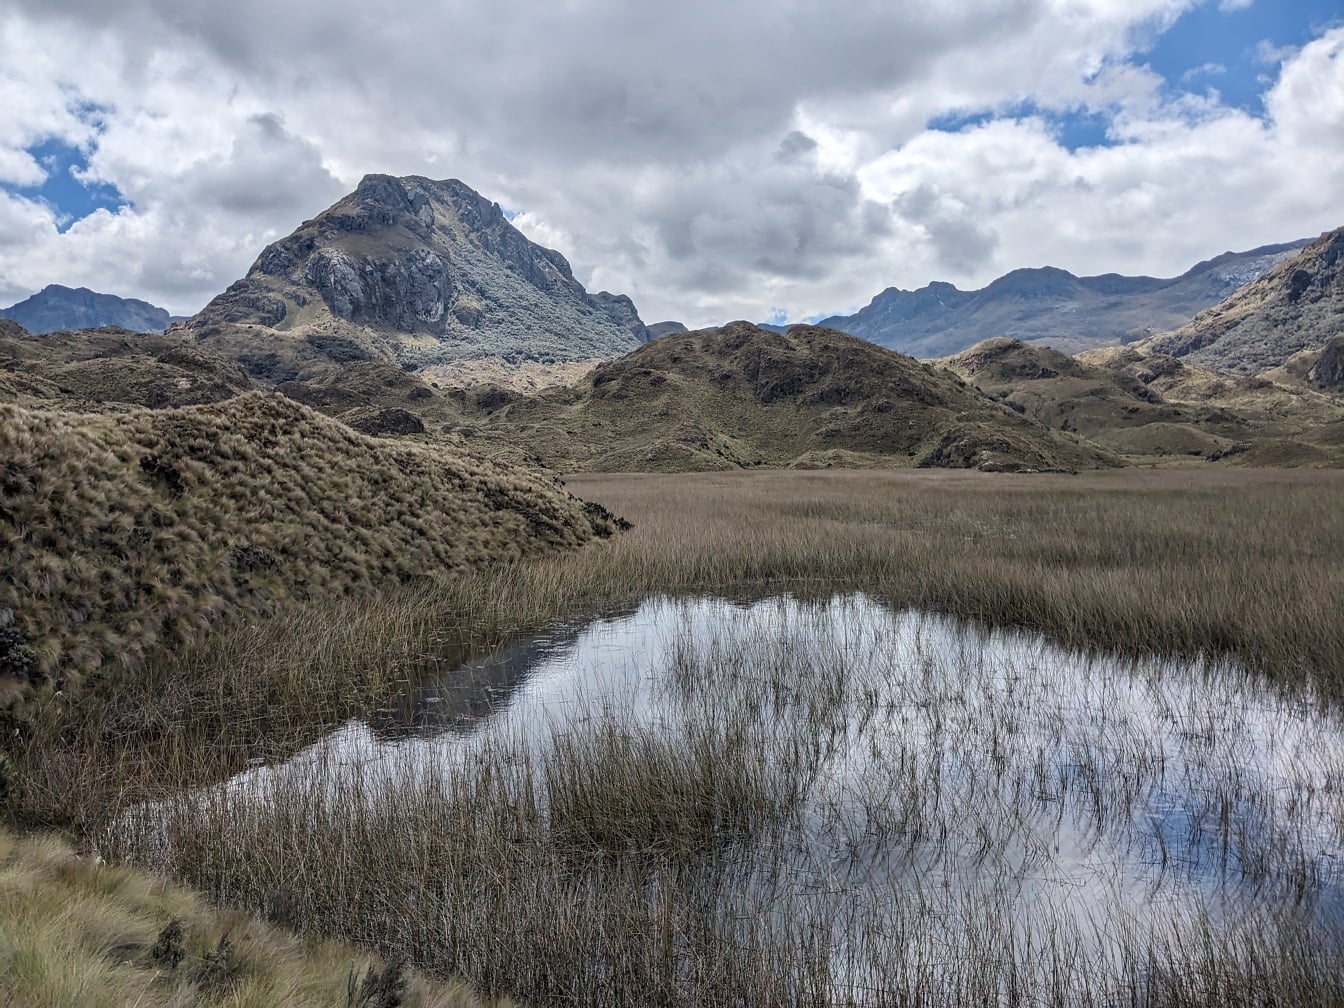 Vatten i ett gräsbevuxet område i bergen i nationalparken i Ecuador